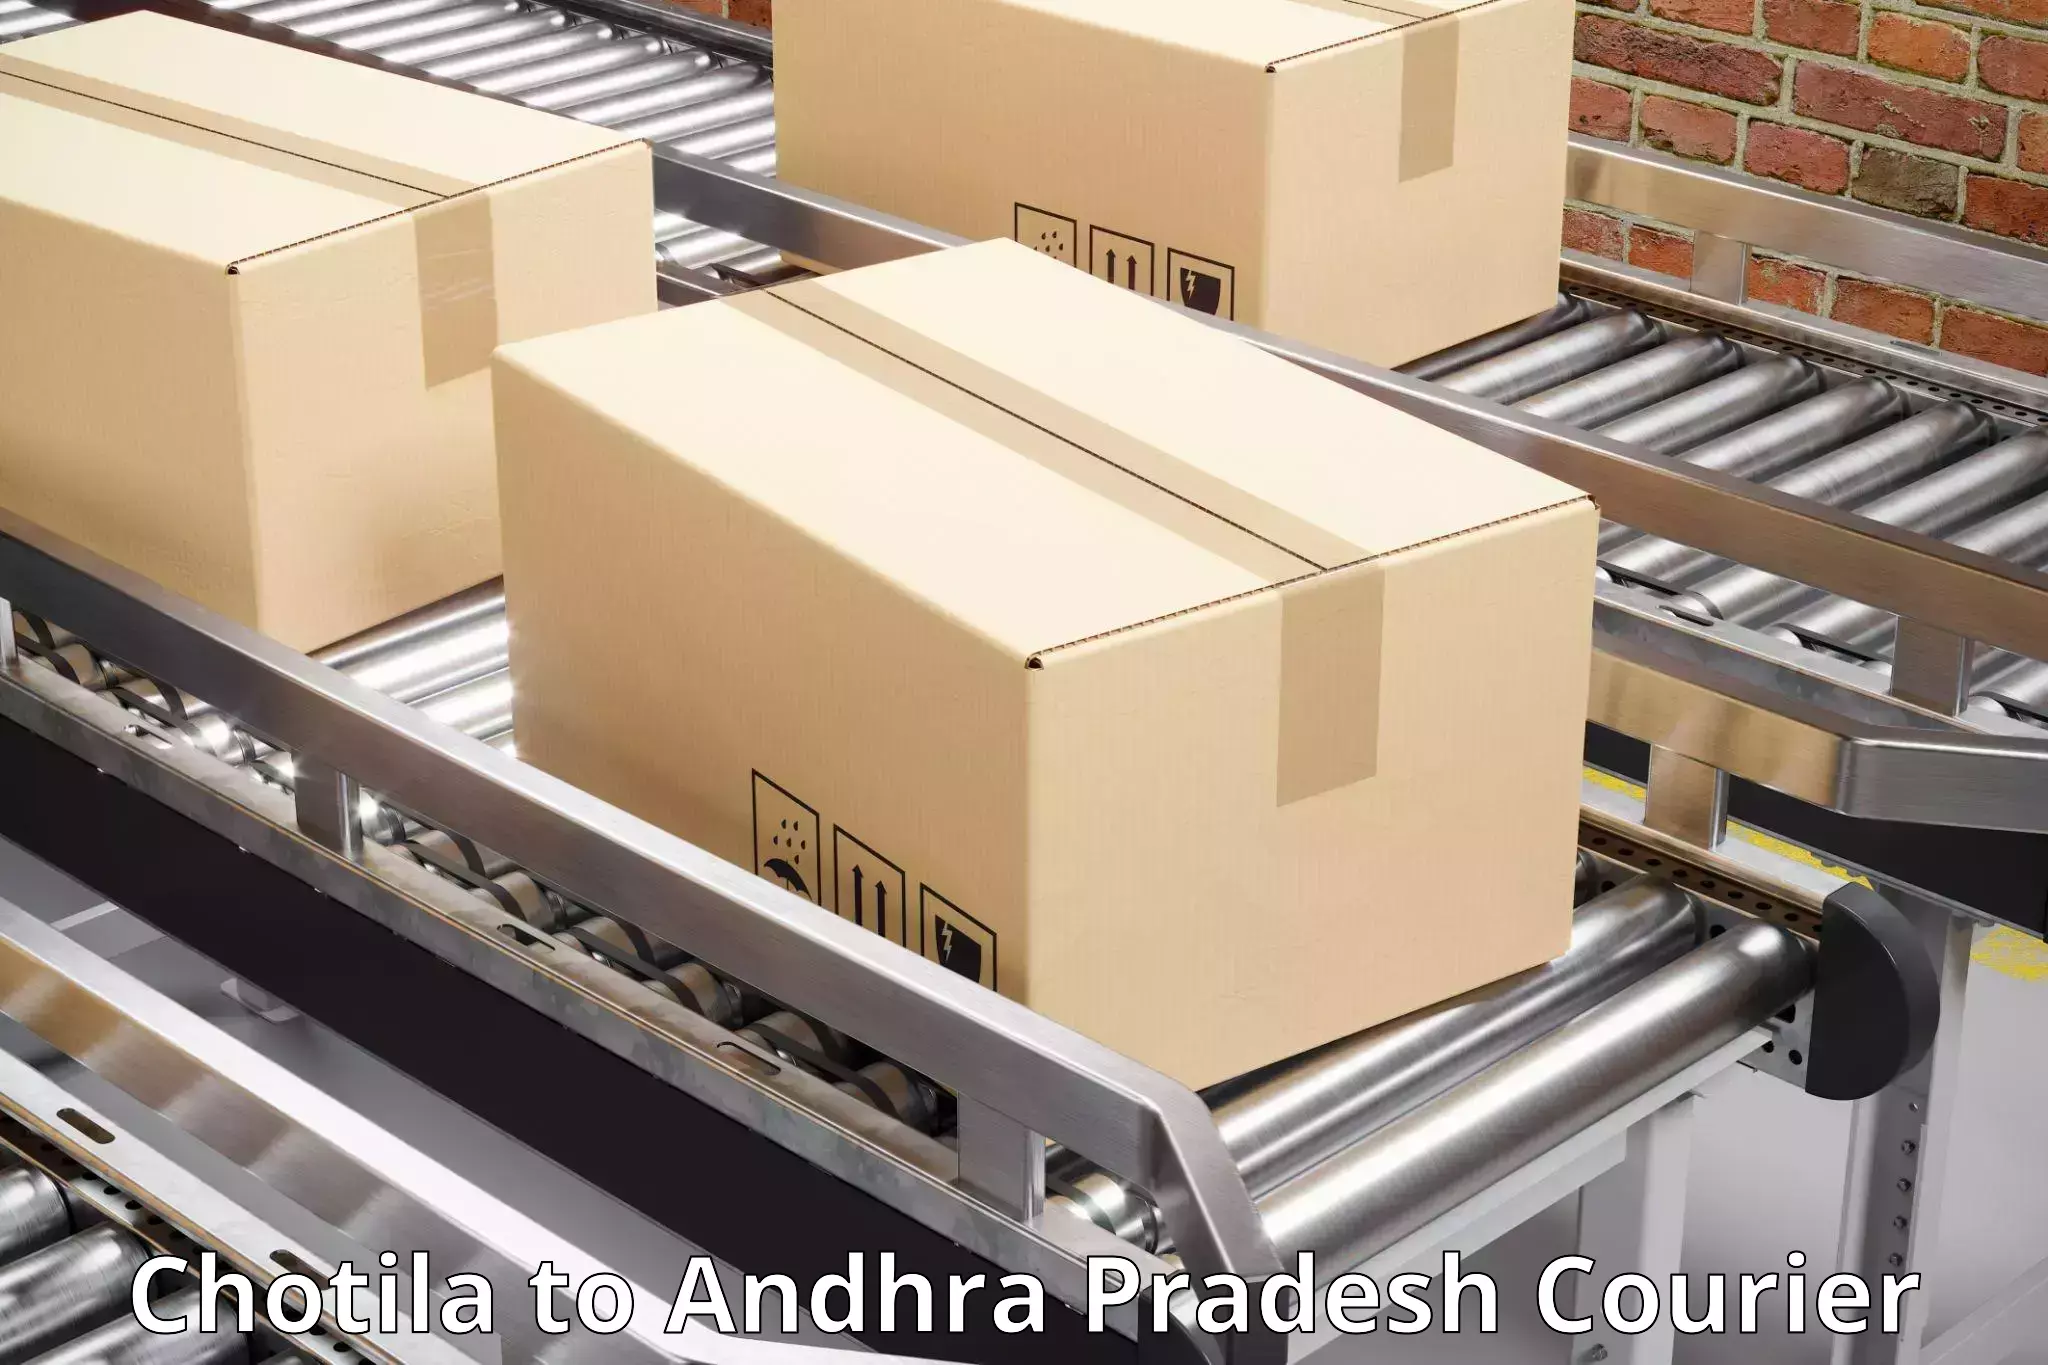 Expedited shipping methods Chotila to Amarapuram